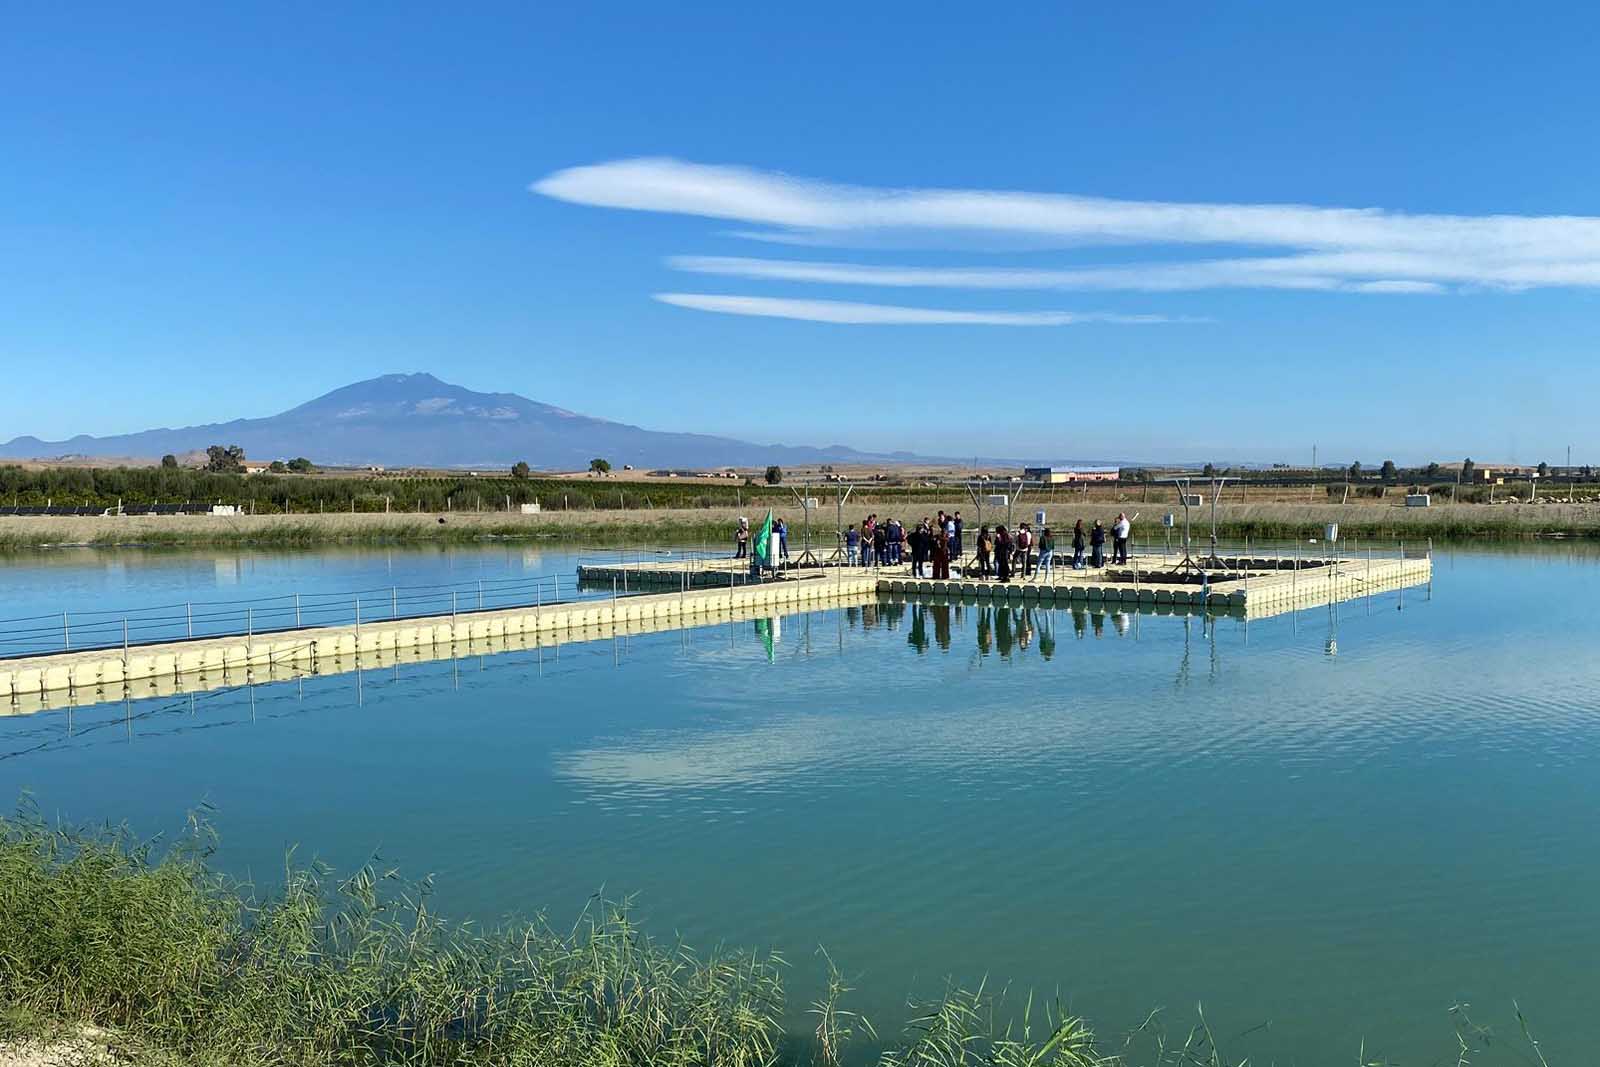 L'impianto di acquacoltura a Ramacca realizzato nell'ambito del progetto Sampei